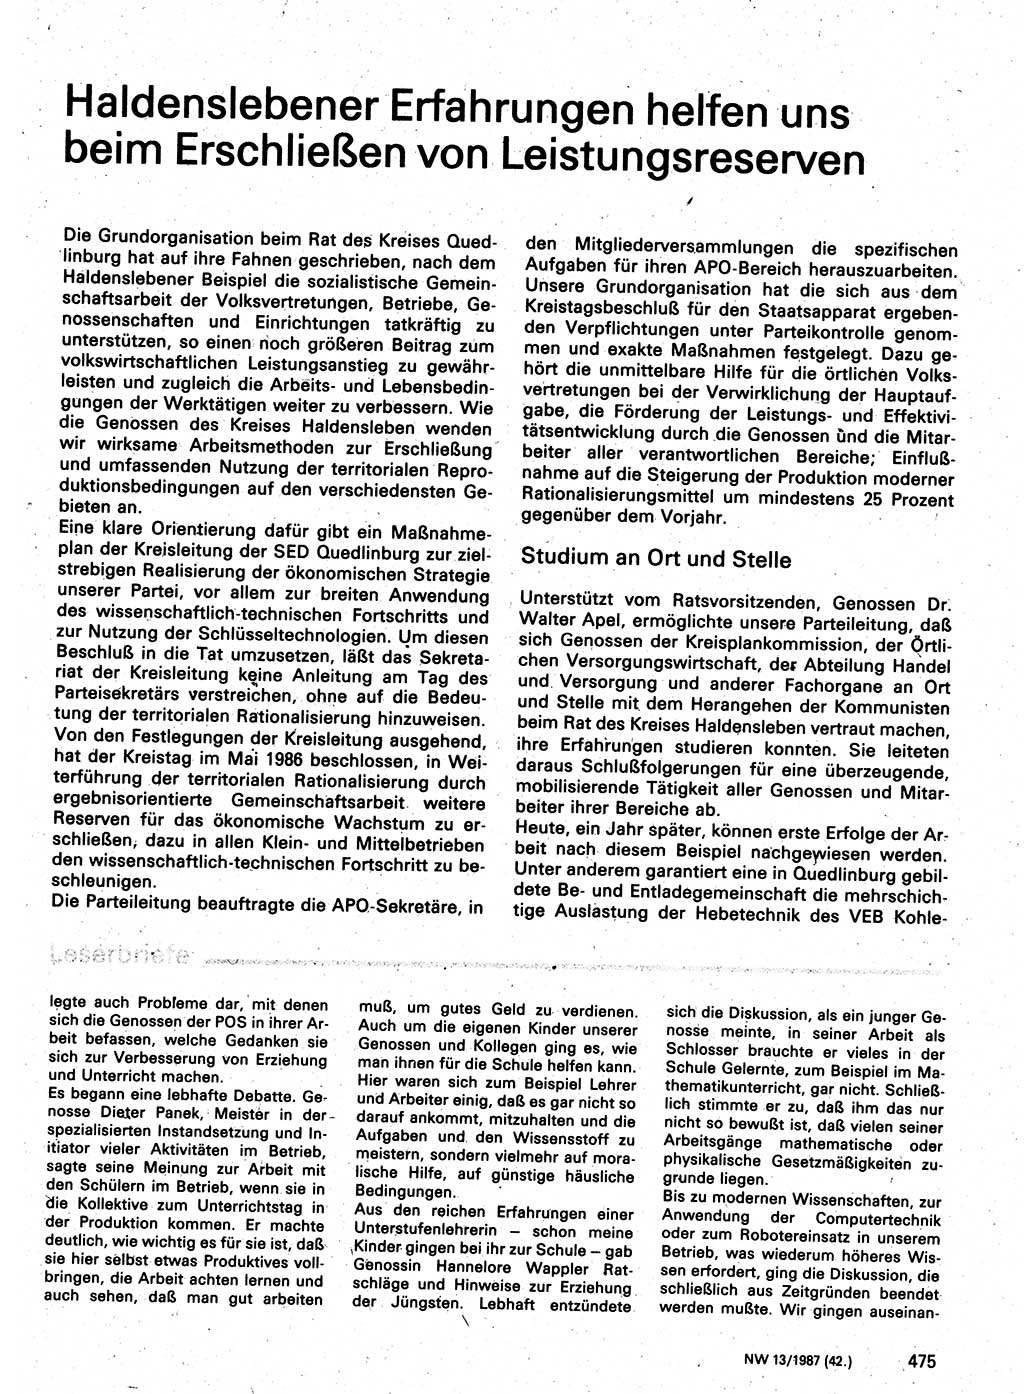 Neuer Weg (NW), Organ des Zentralkomitees (ZK) der SED (Sozialistische Einheitspartei Deutschlands) für Fragen des Parteilebens, 42. Jahrgang [Deutsche Demokratische Republik (DDR)] 1987, Seite 475 (NW ZK SED DDR 1987, S. 475)